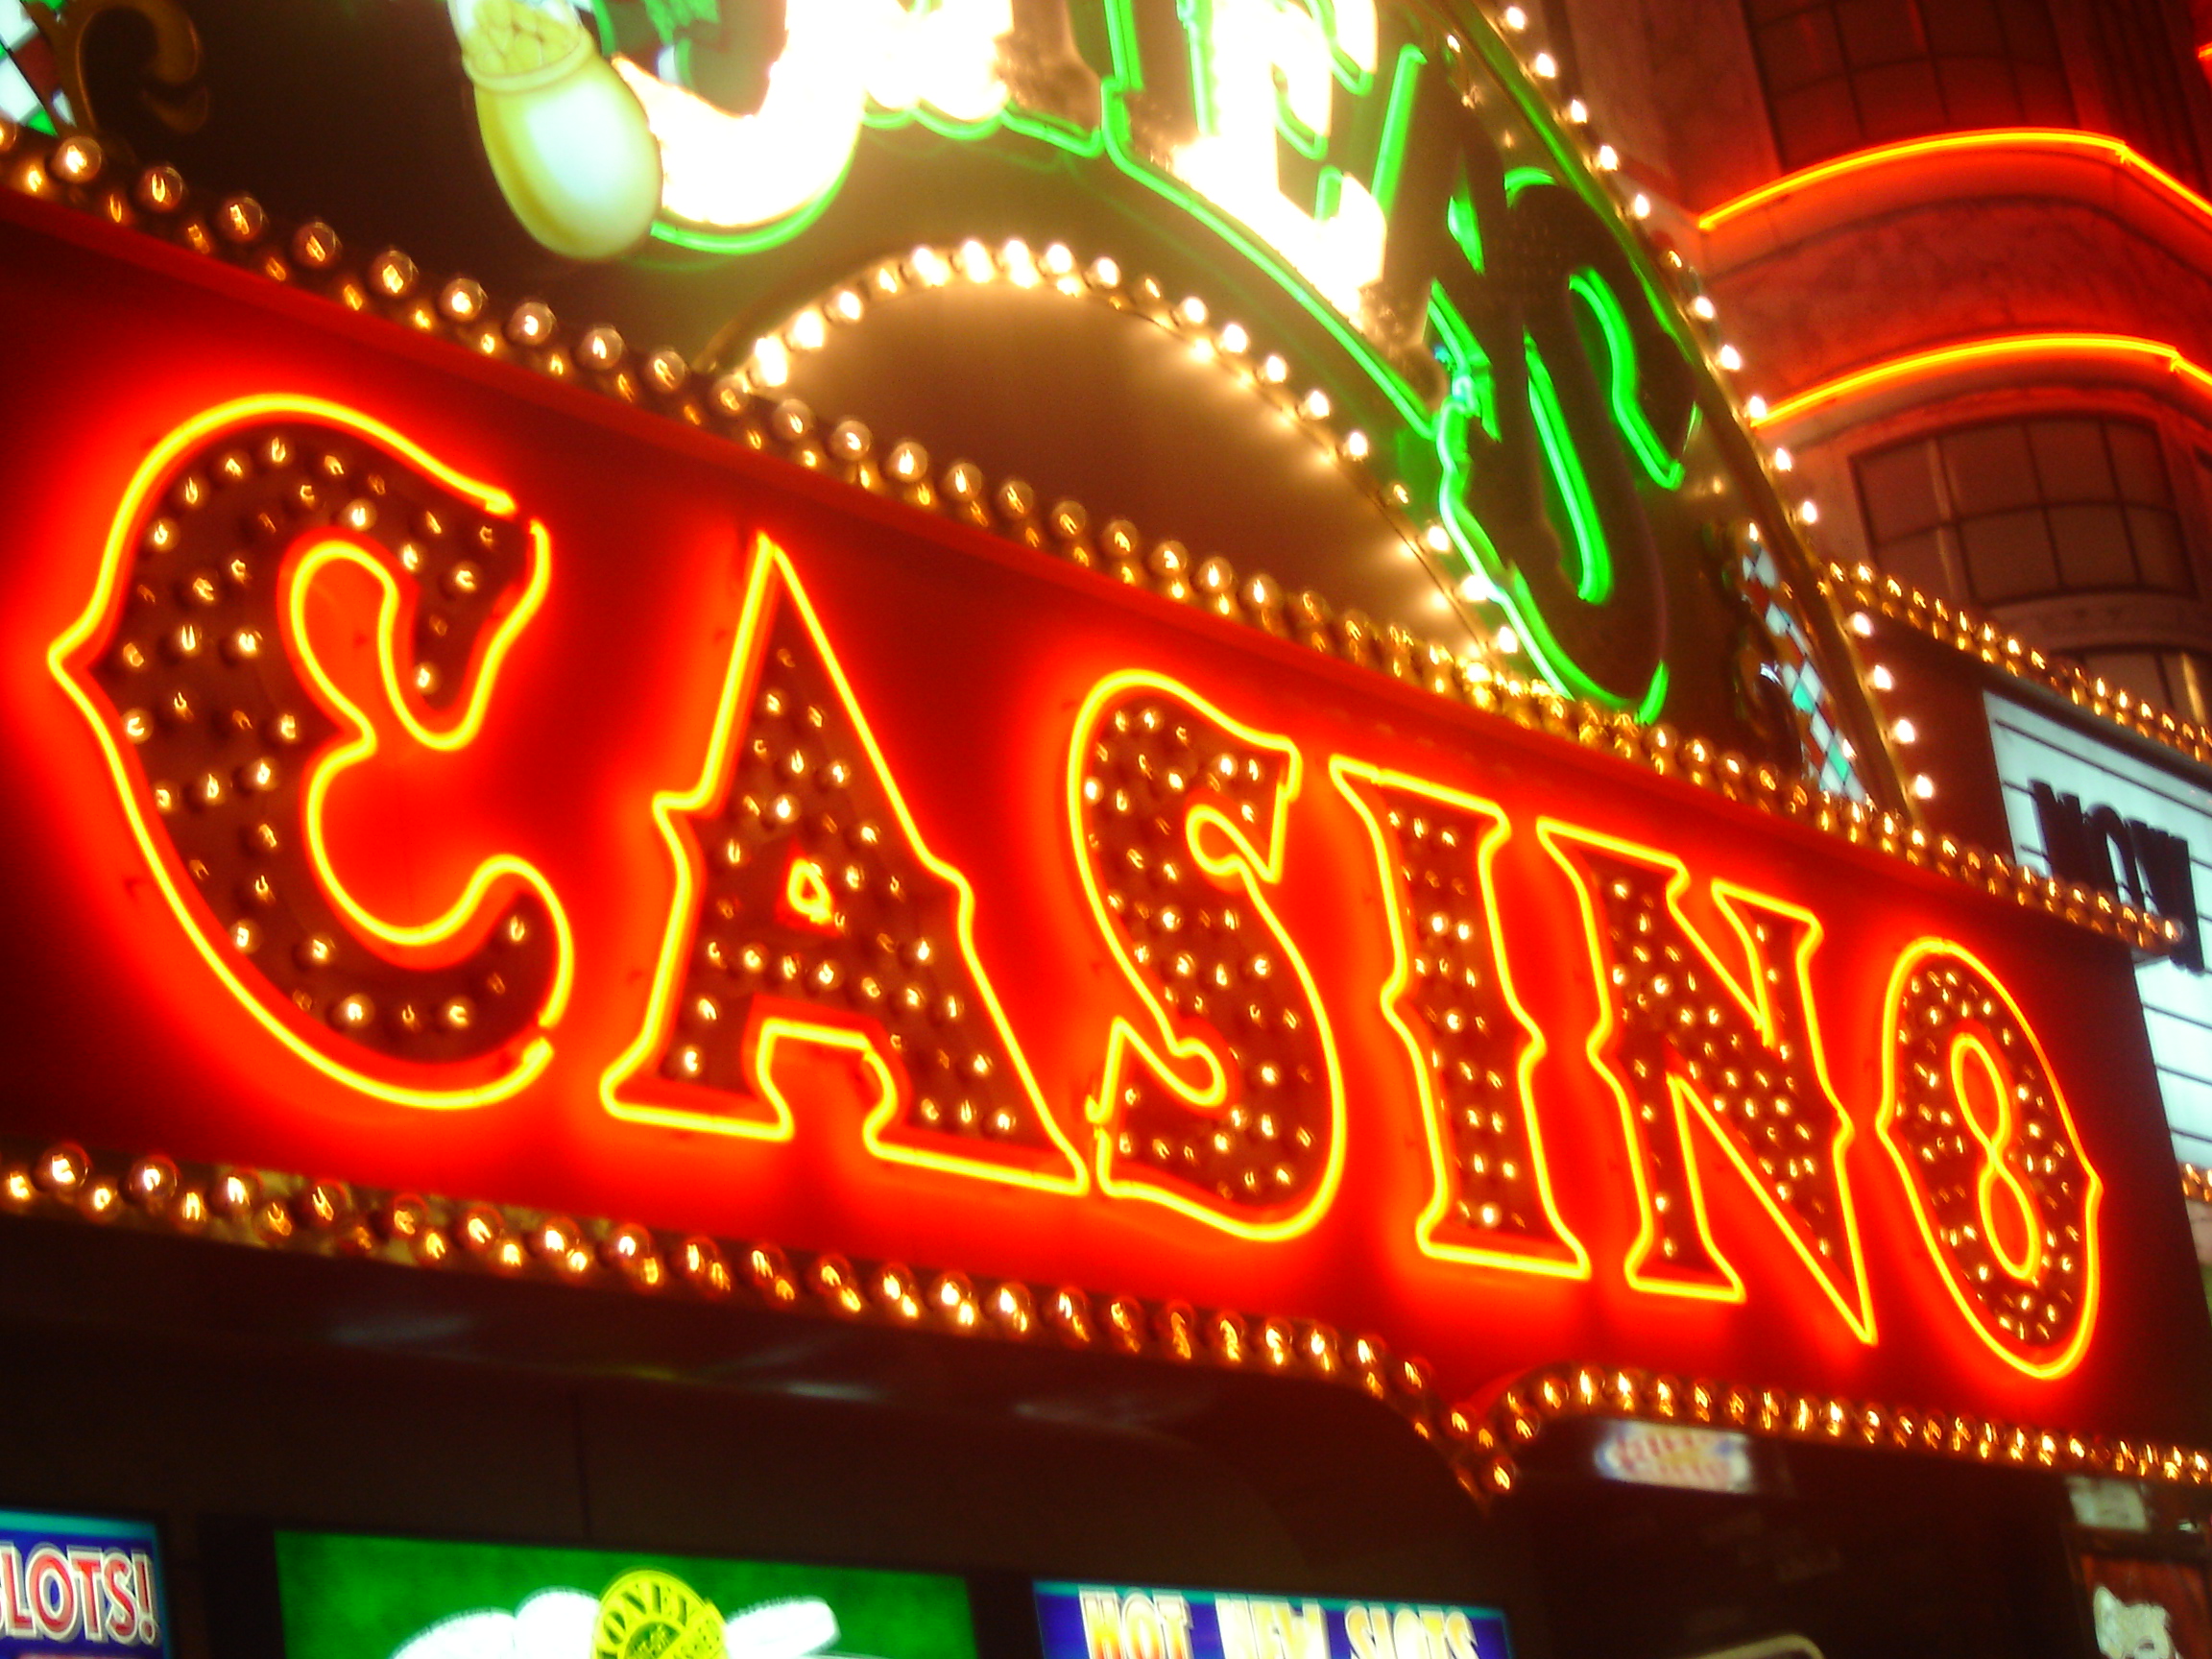 Wjjeren to buy bitcoin for casino